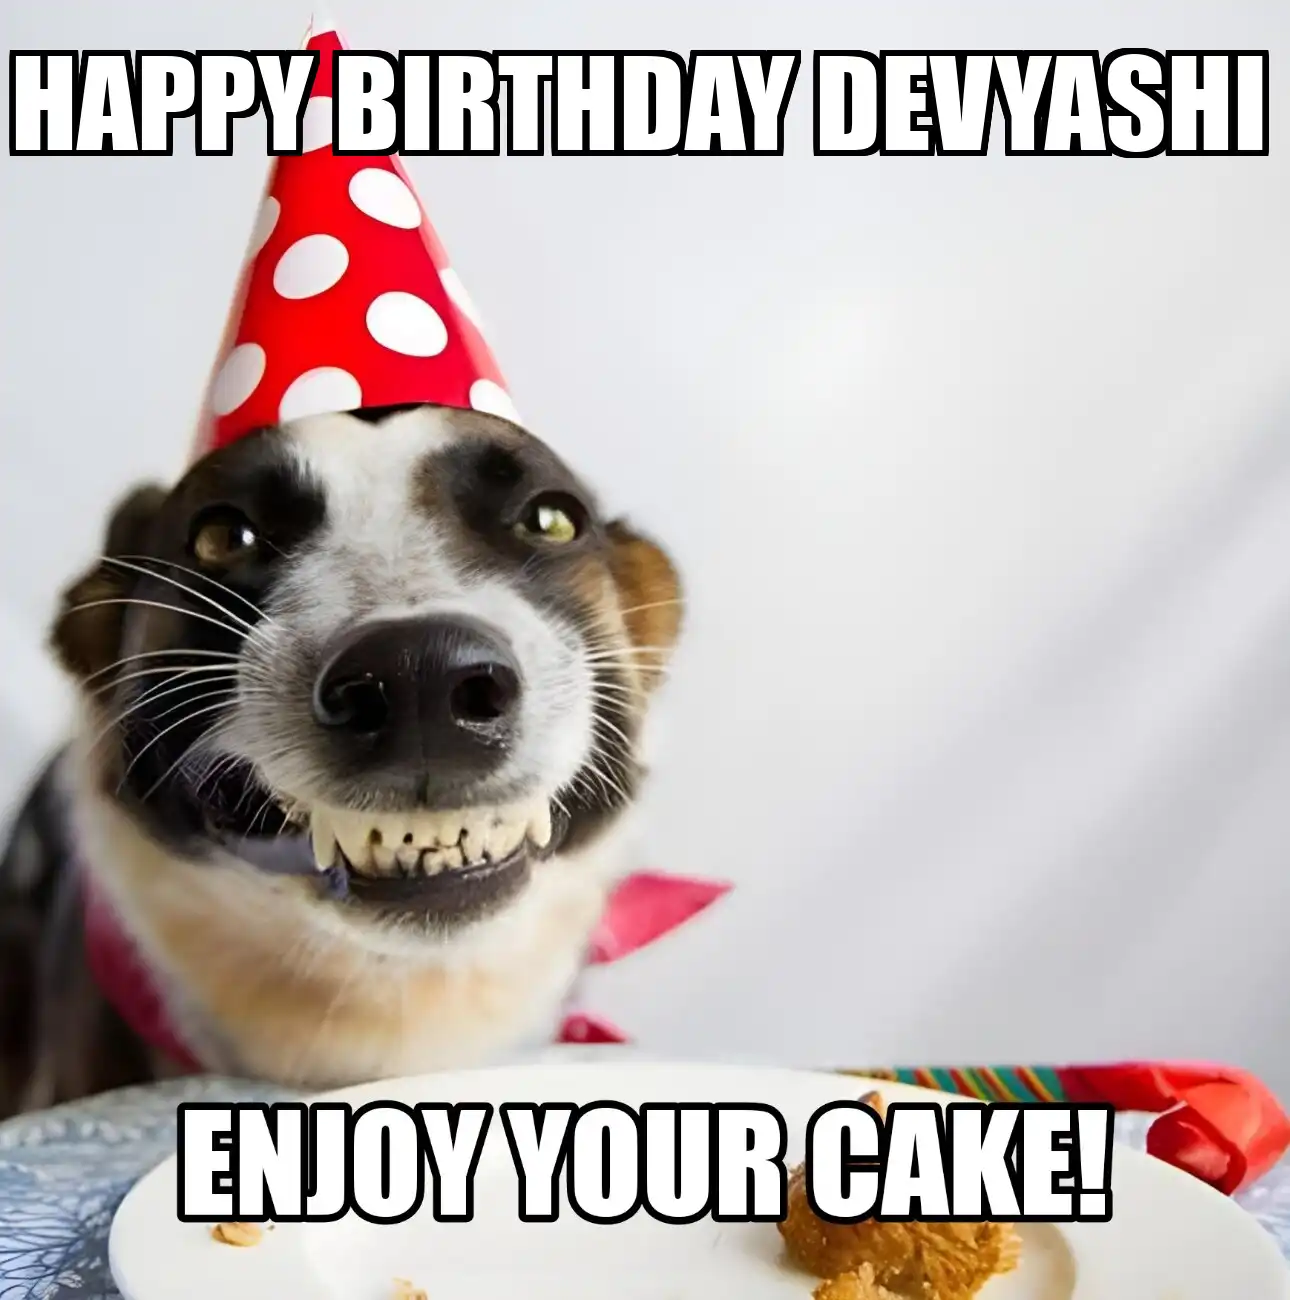 Happy Birthday Devyashi Enjoy Your Cake Dog Meme